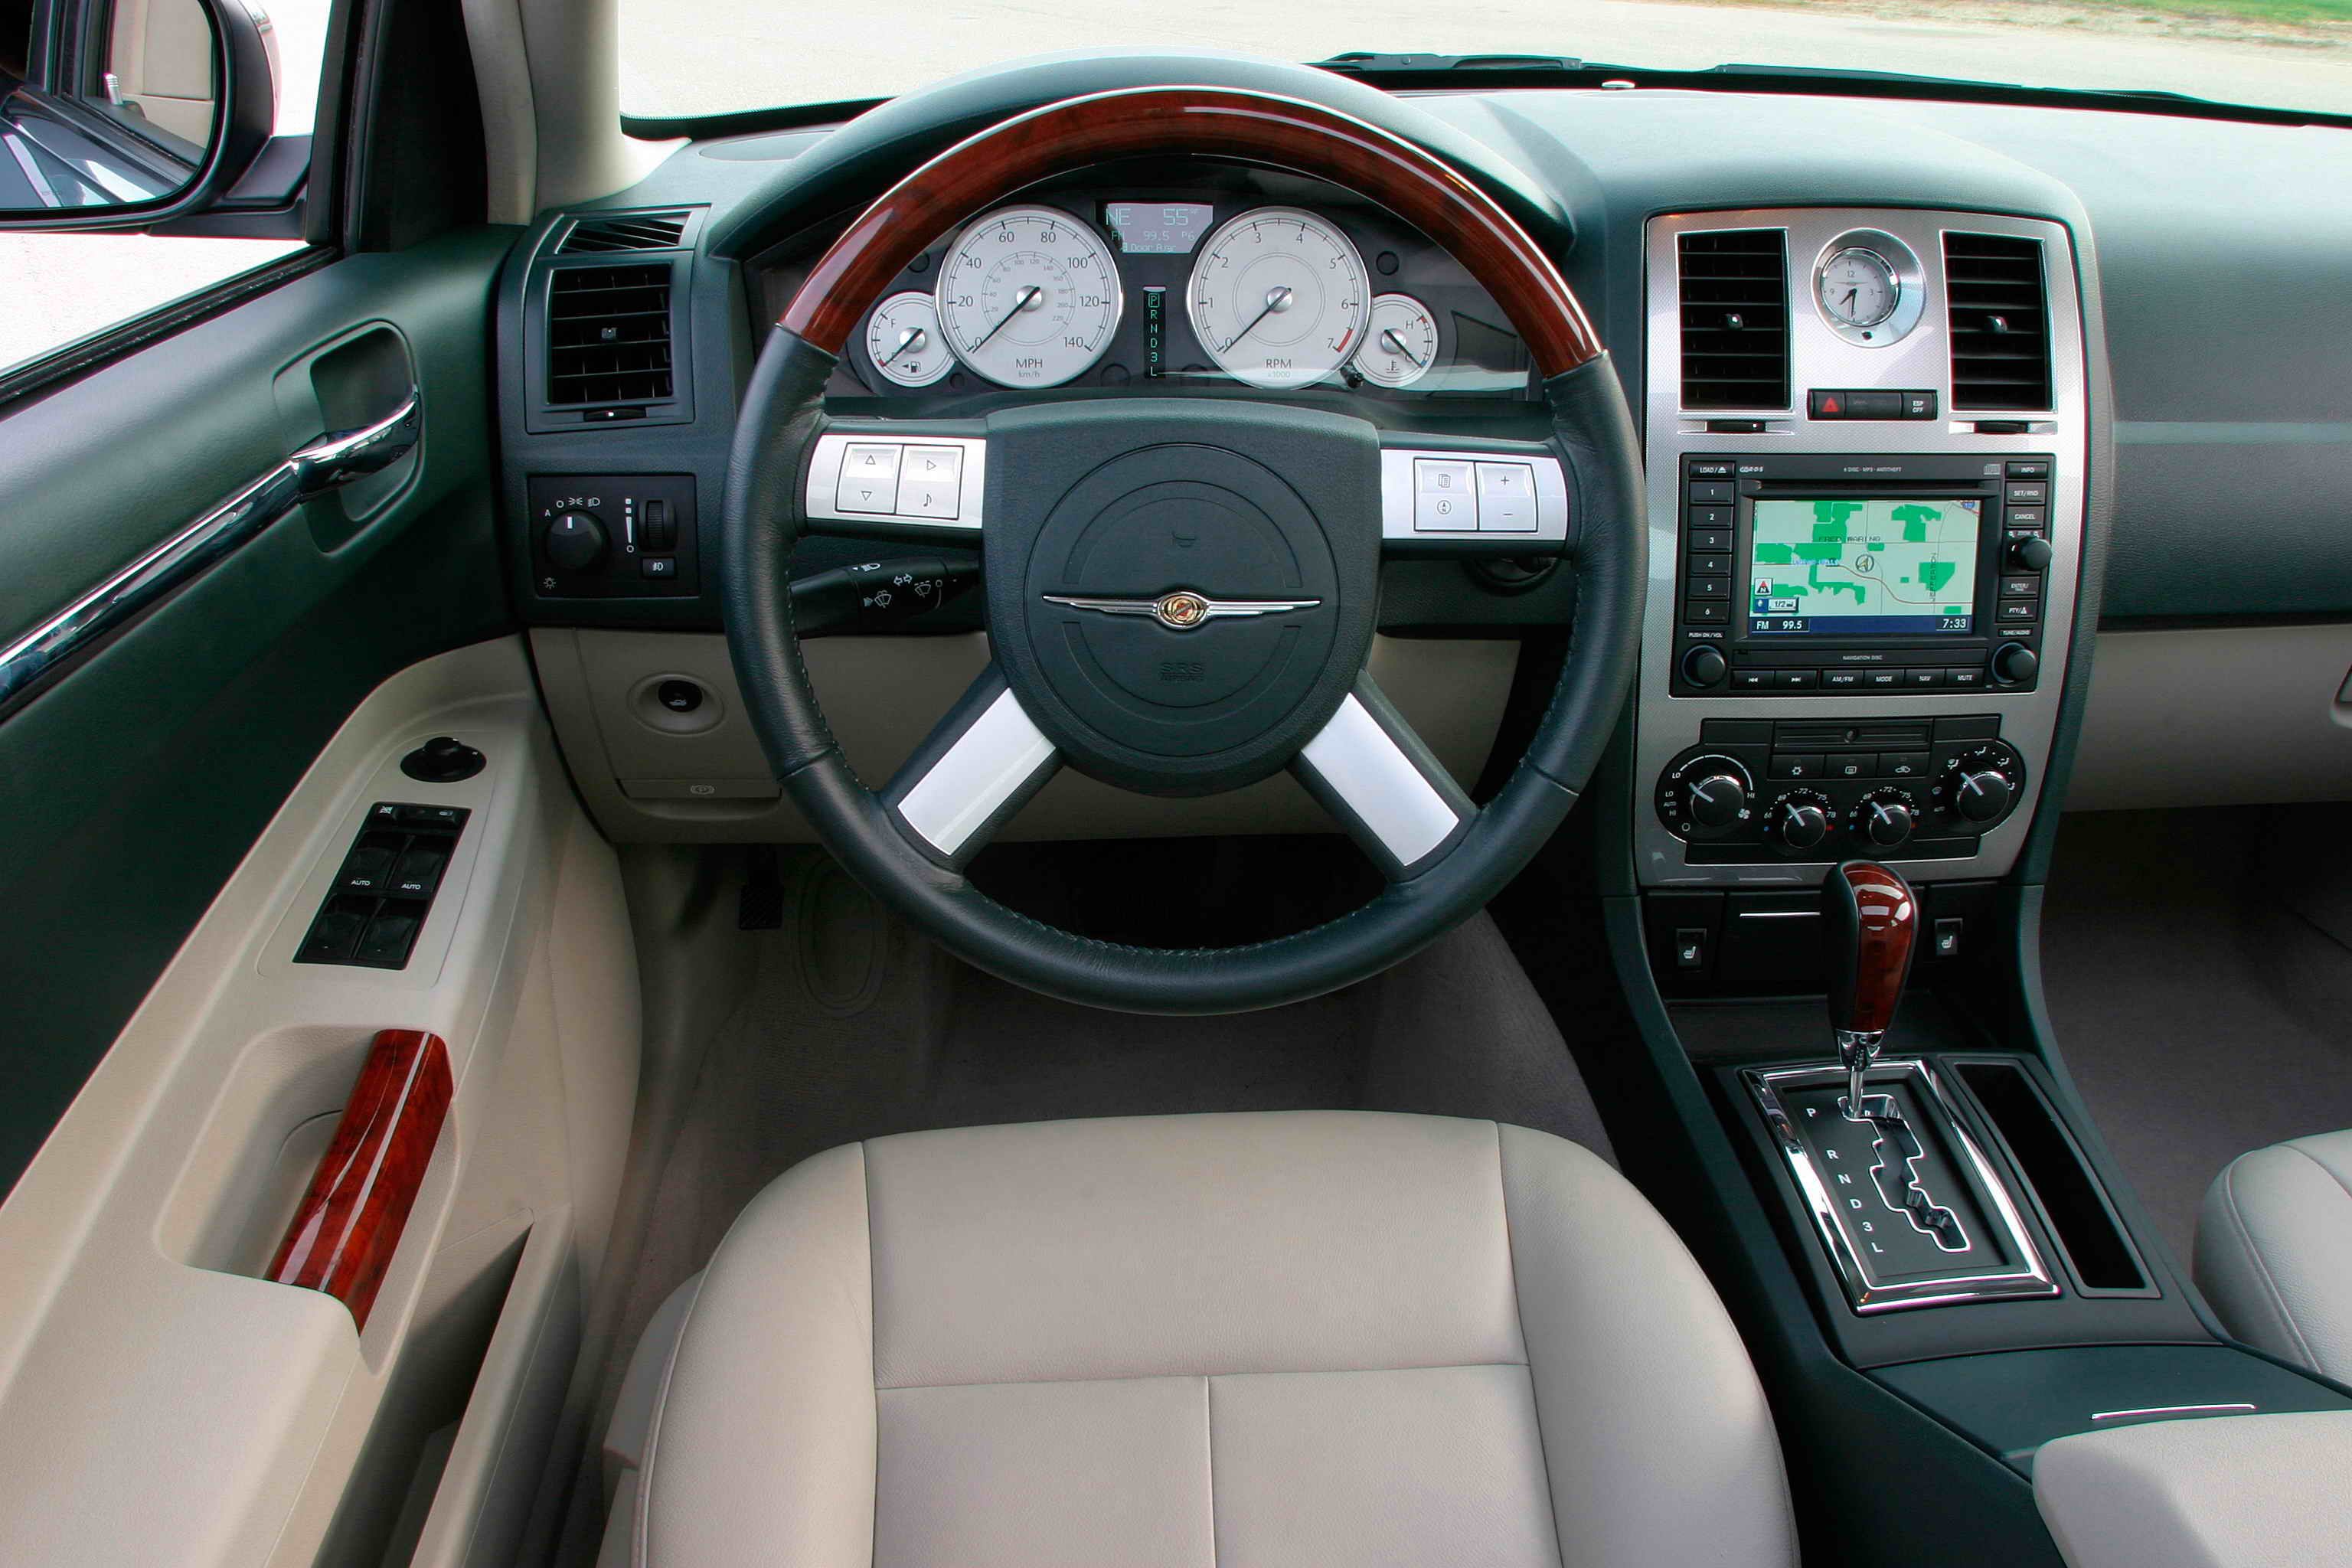 2006 Chrysler 300C